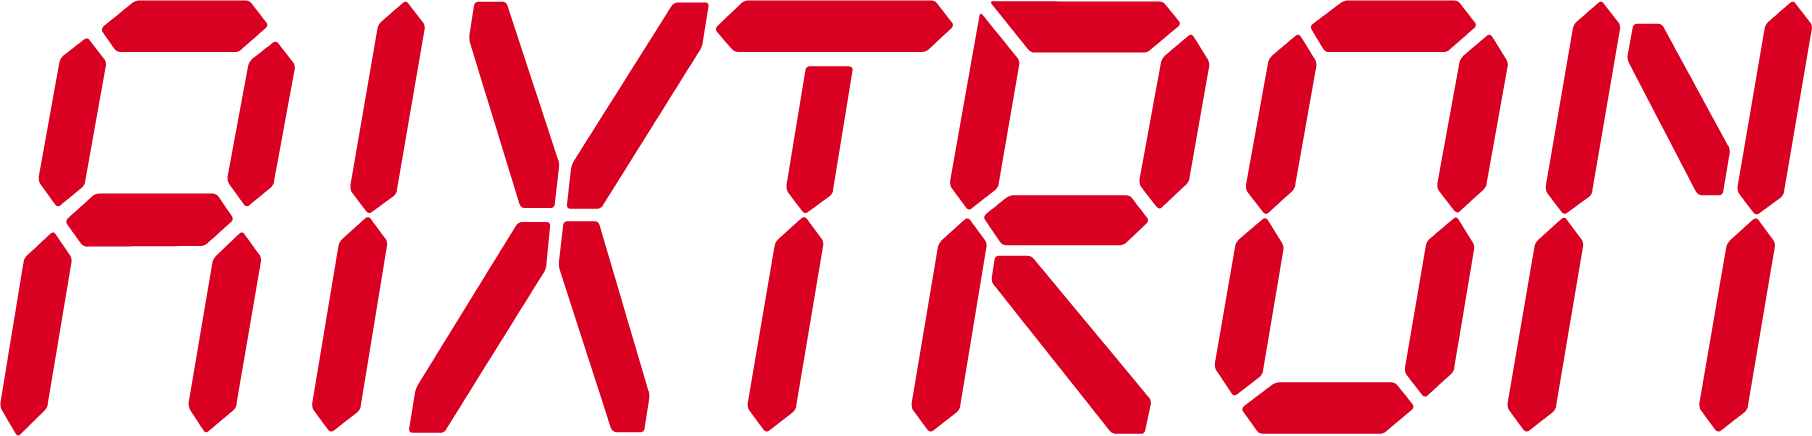 Aixtron logo large (transparent PNG)